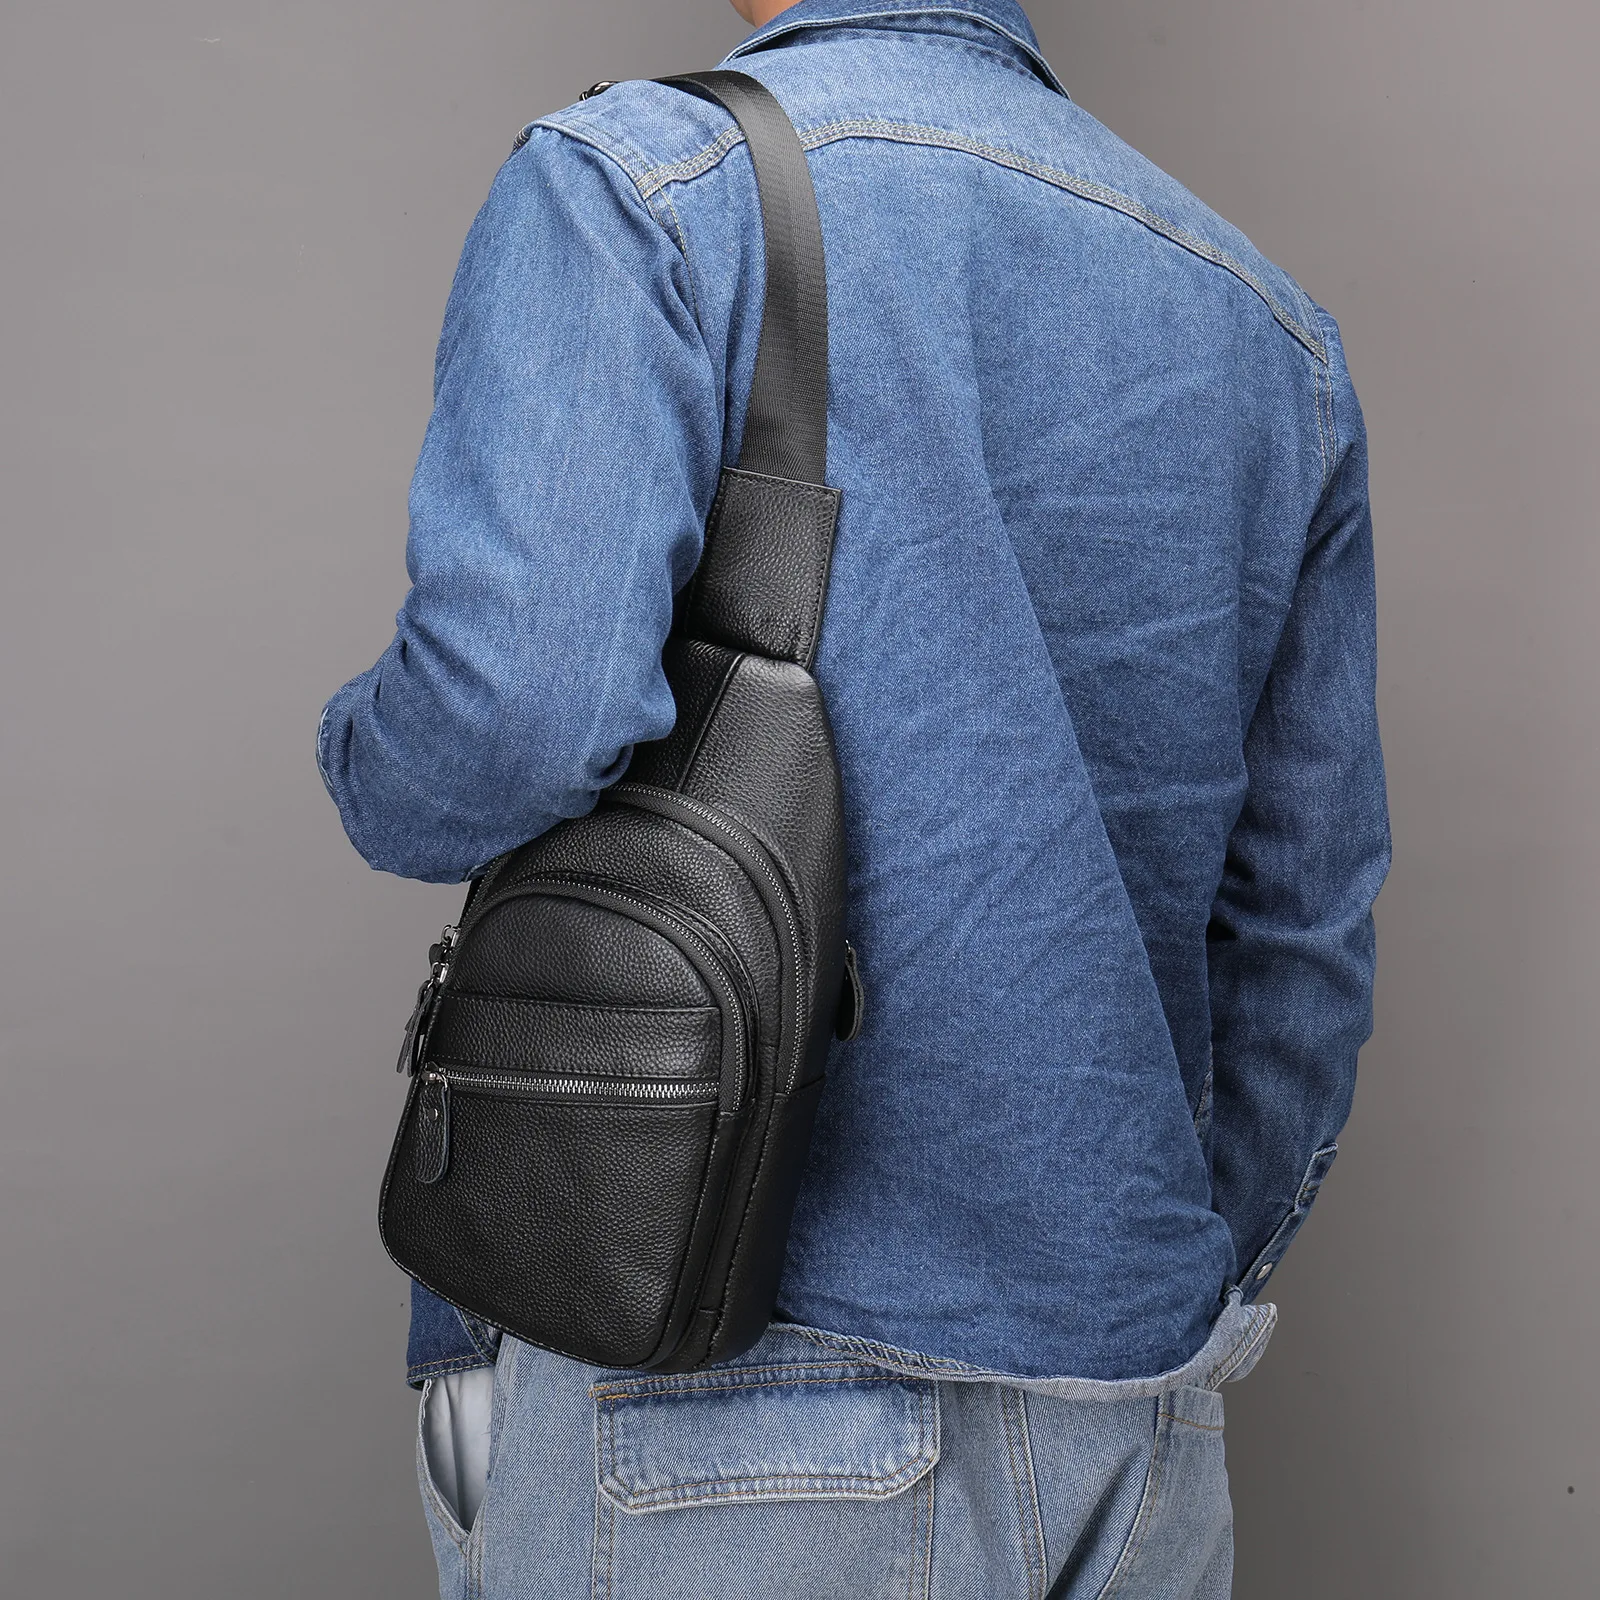 Άνδρες τσάντα τσάντα 100% Δέρμα Αγελάδας Τσάντες Ώμου Μόδα Τσάντα Crossbody Τσάντες θωρακική τσάντα για τα άτομα μαύρα πολυτελή τσάντα